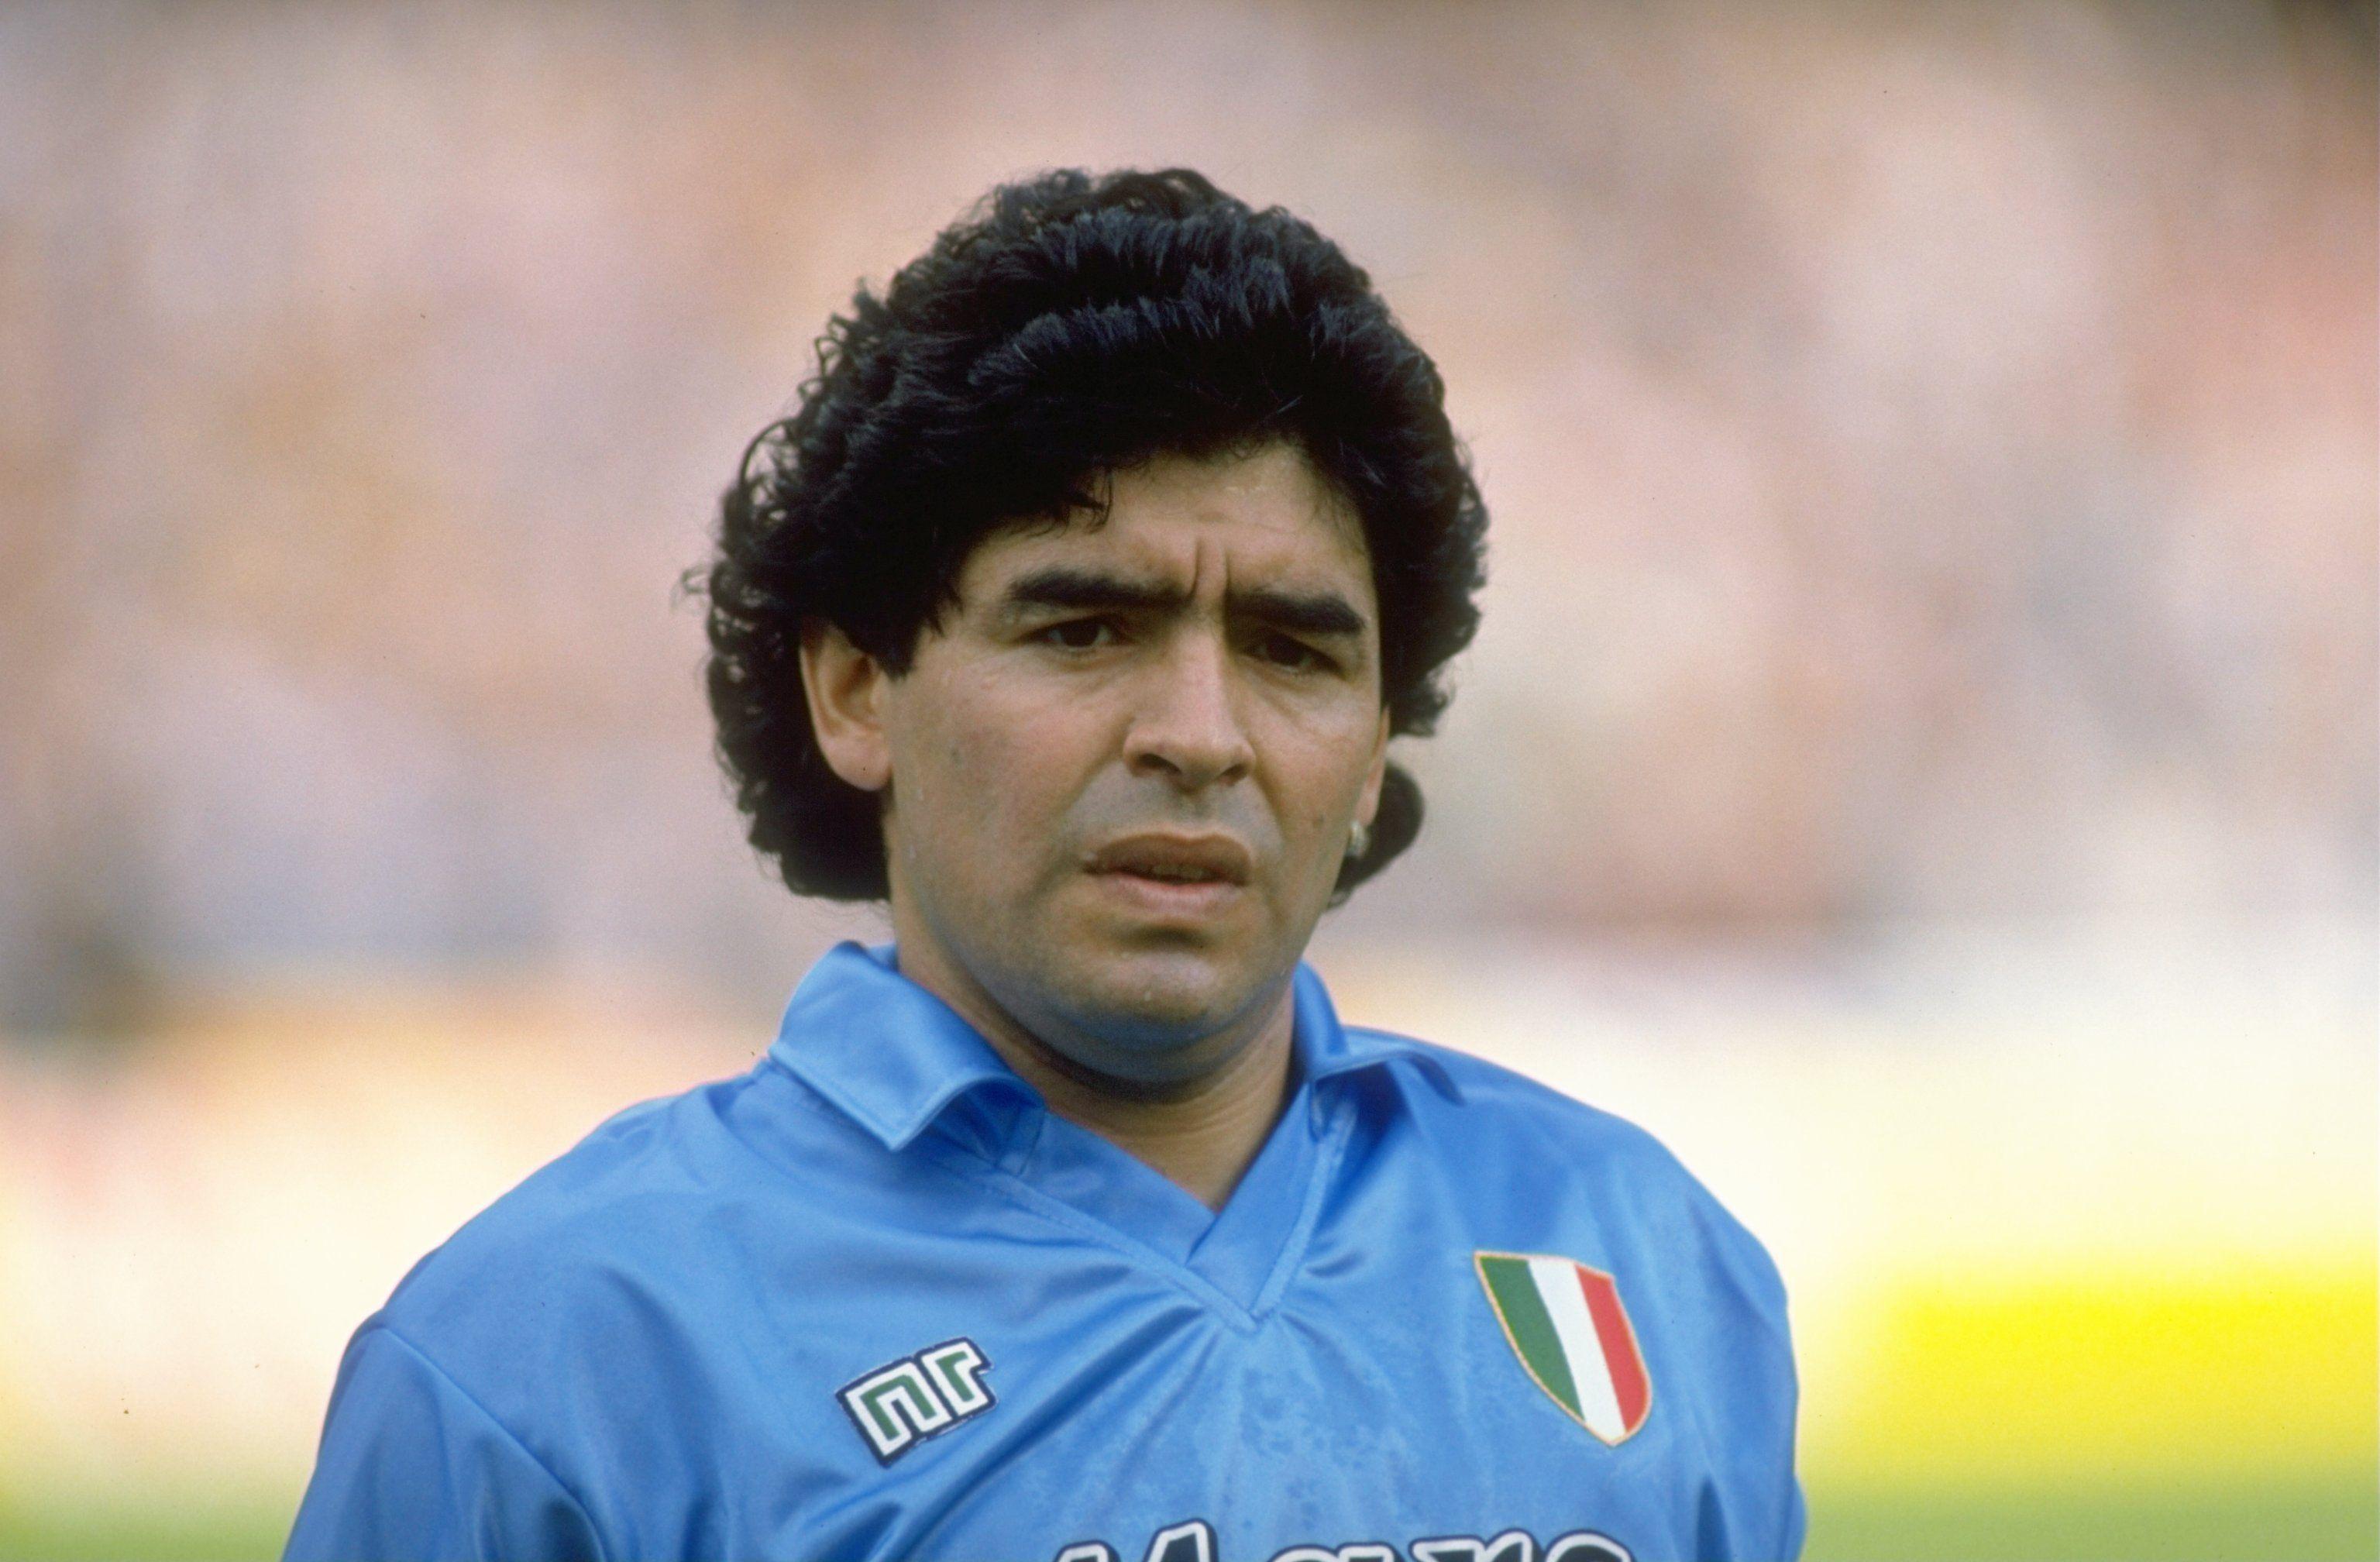 2022x2959px 2278.99 KB Diego Armando Maradona